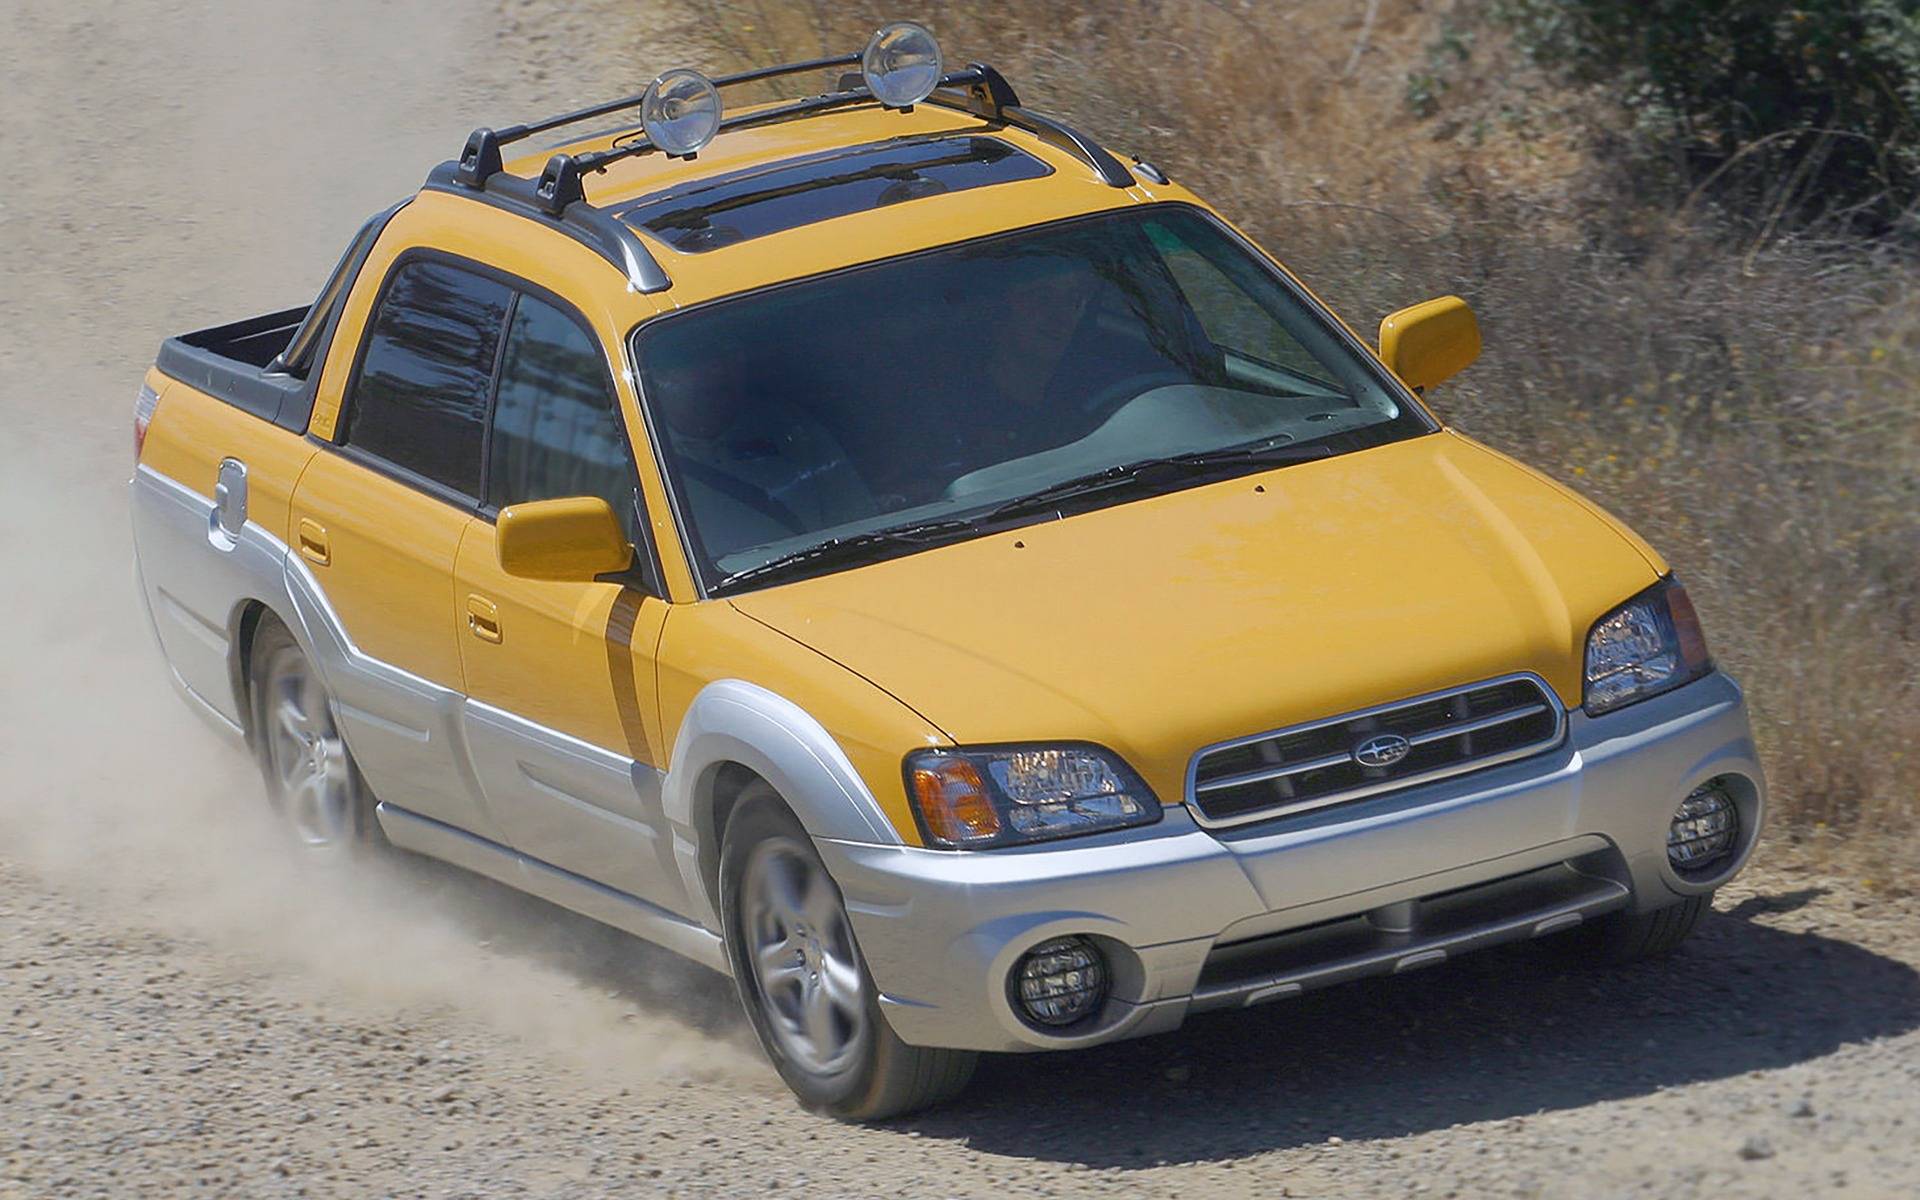 Žlutý nákladní vůz Subaru Baja jedoucí po polní cestě